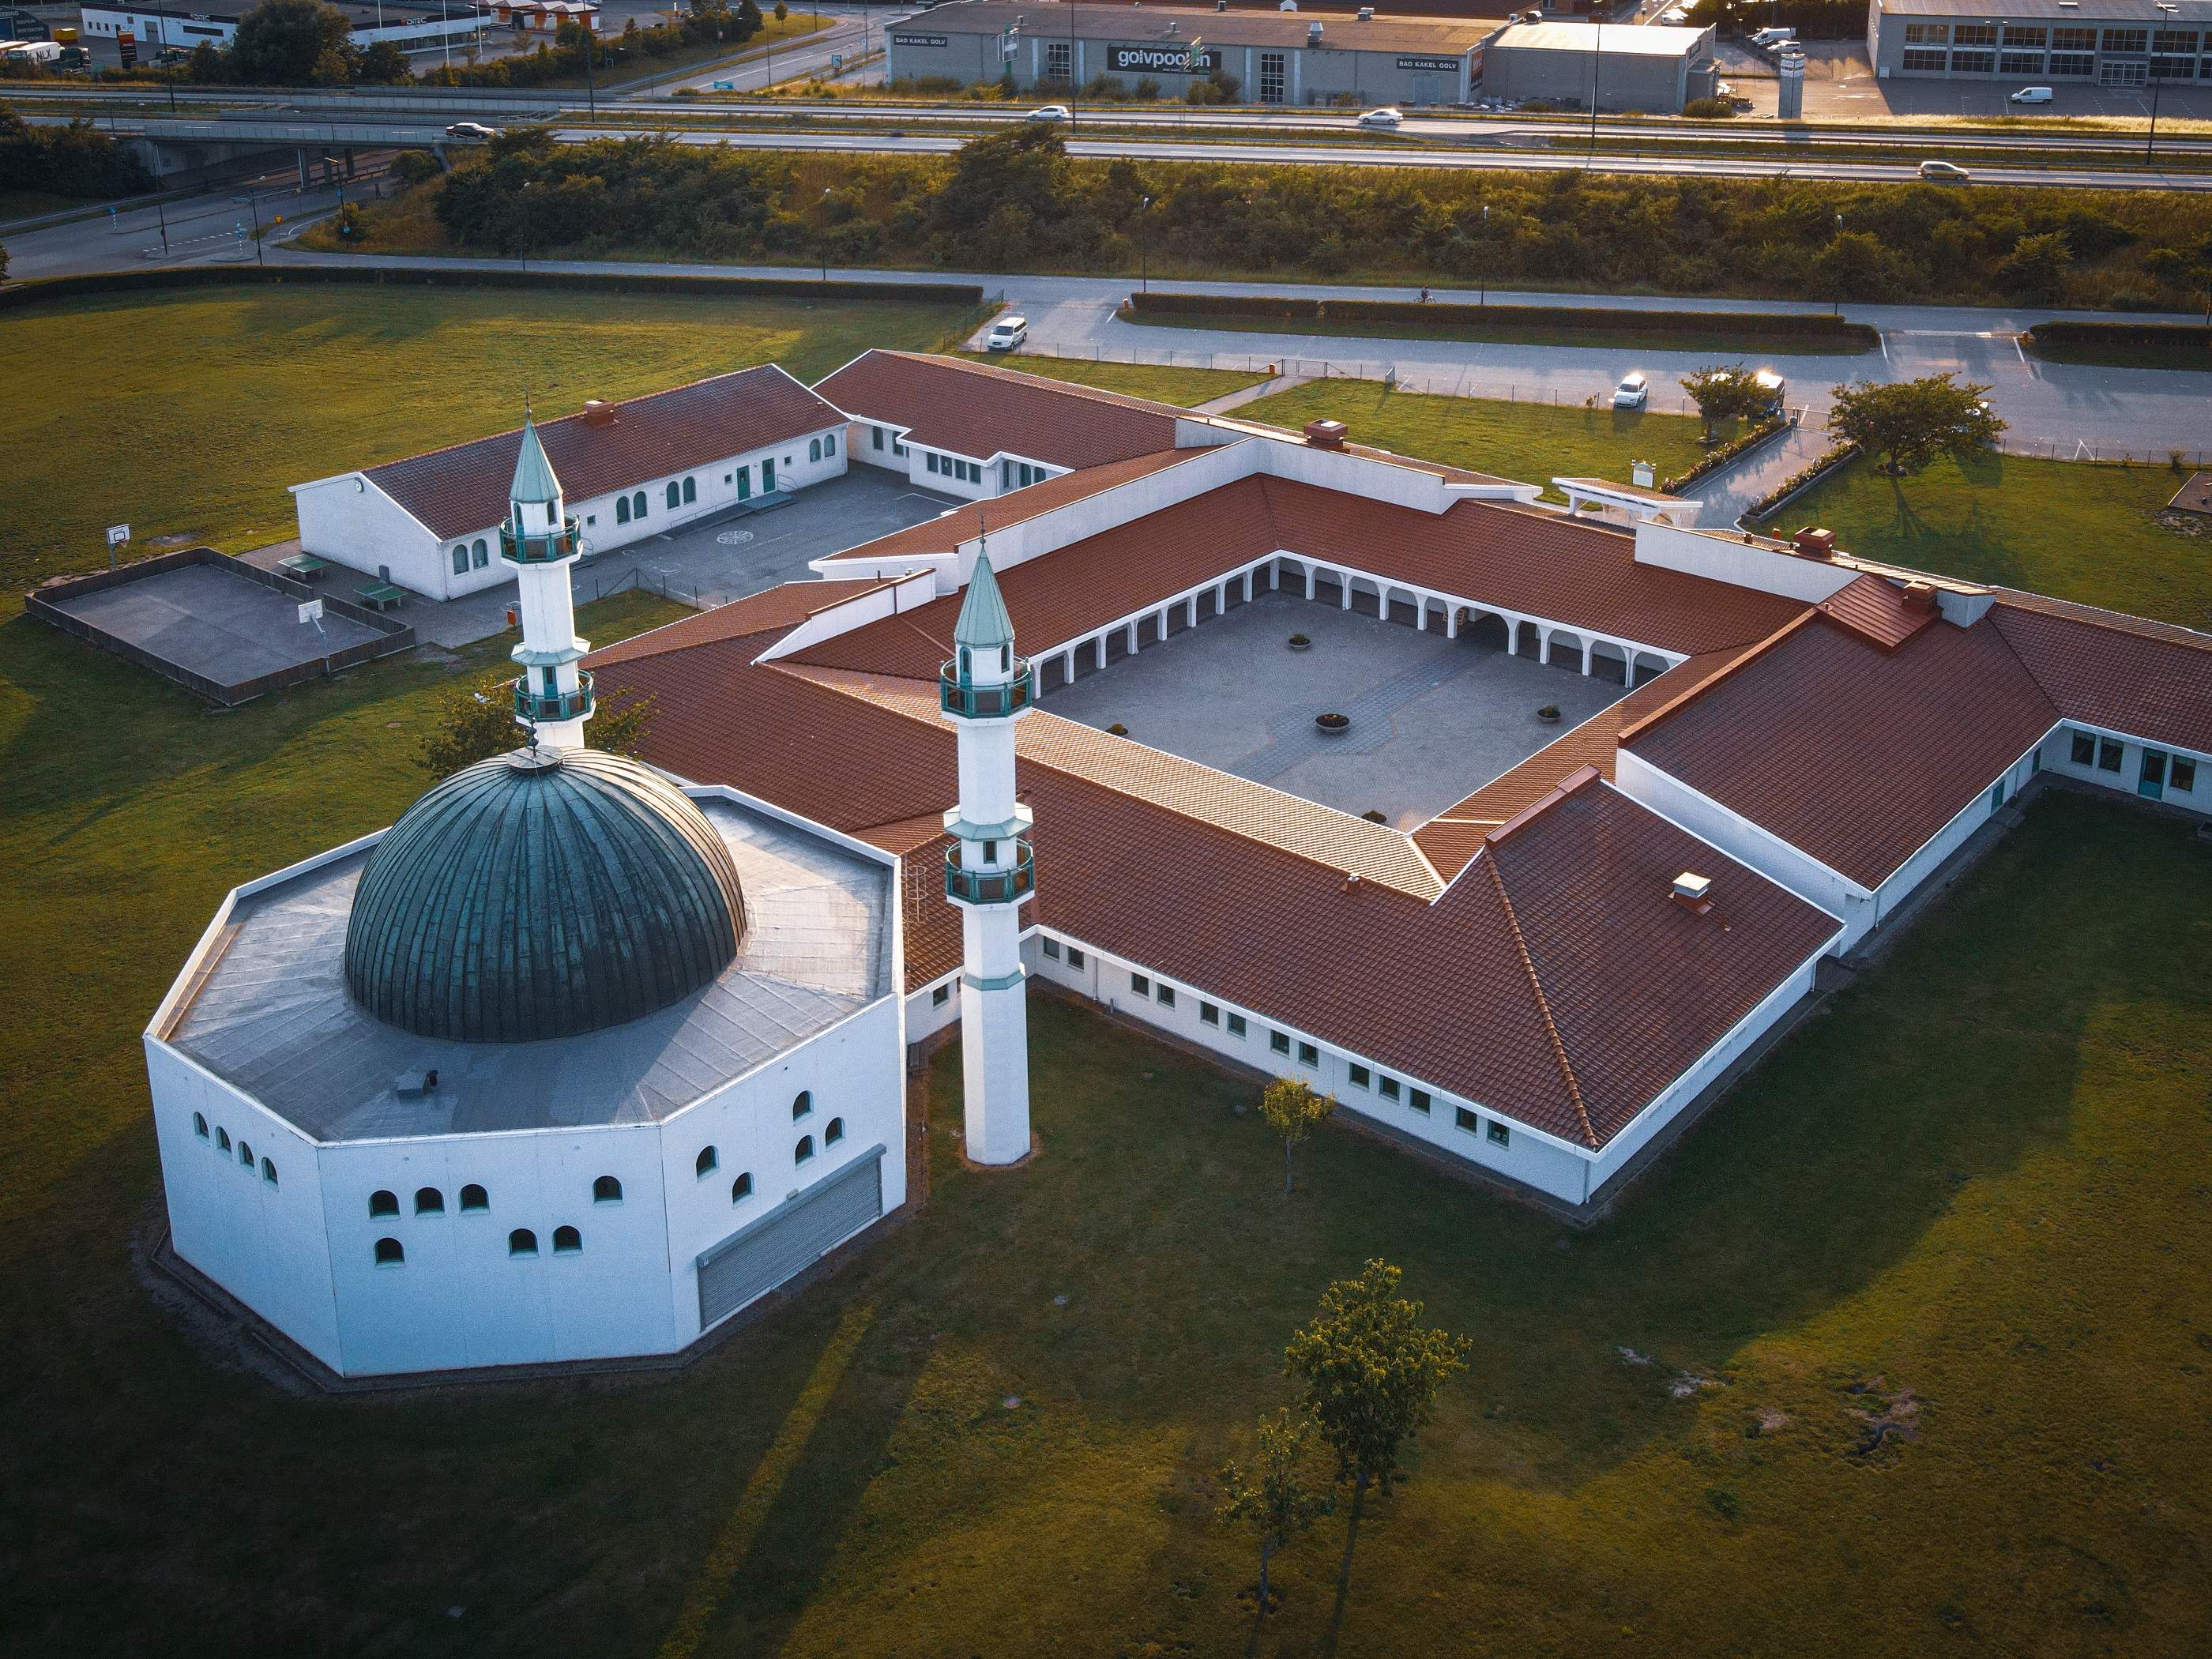 Islamic Center i Malmö 2019. Bild: Anders Eikedahl.